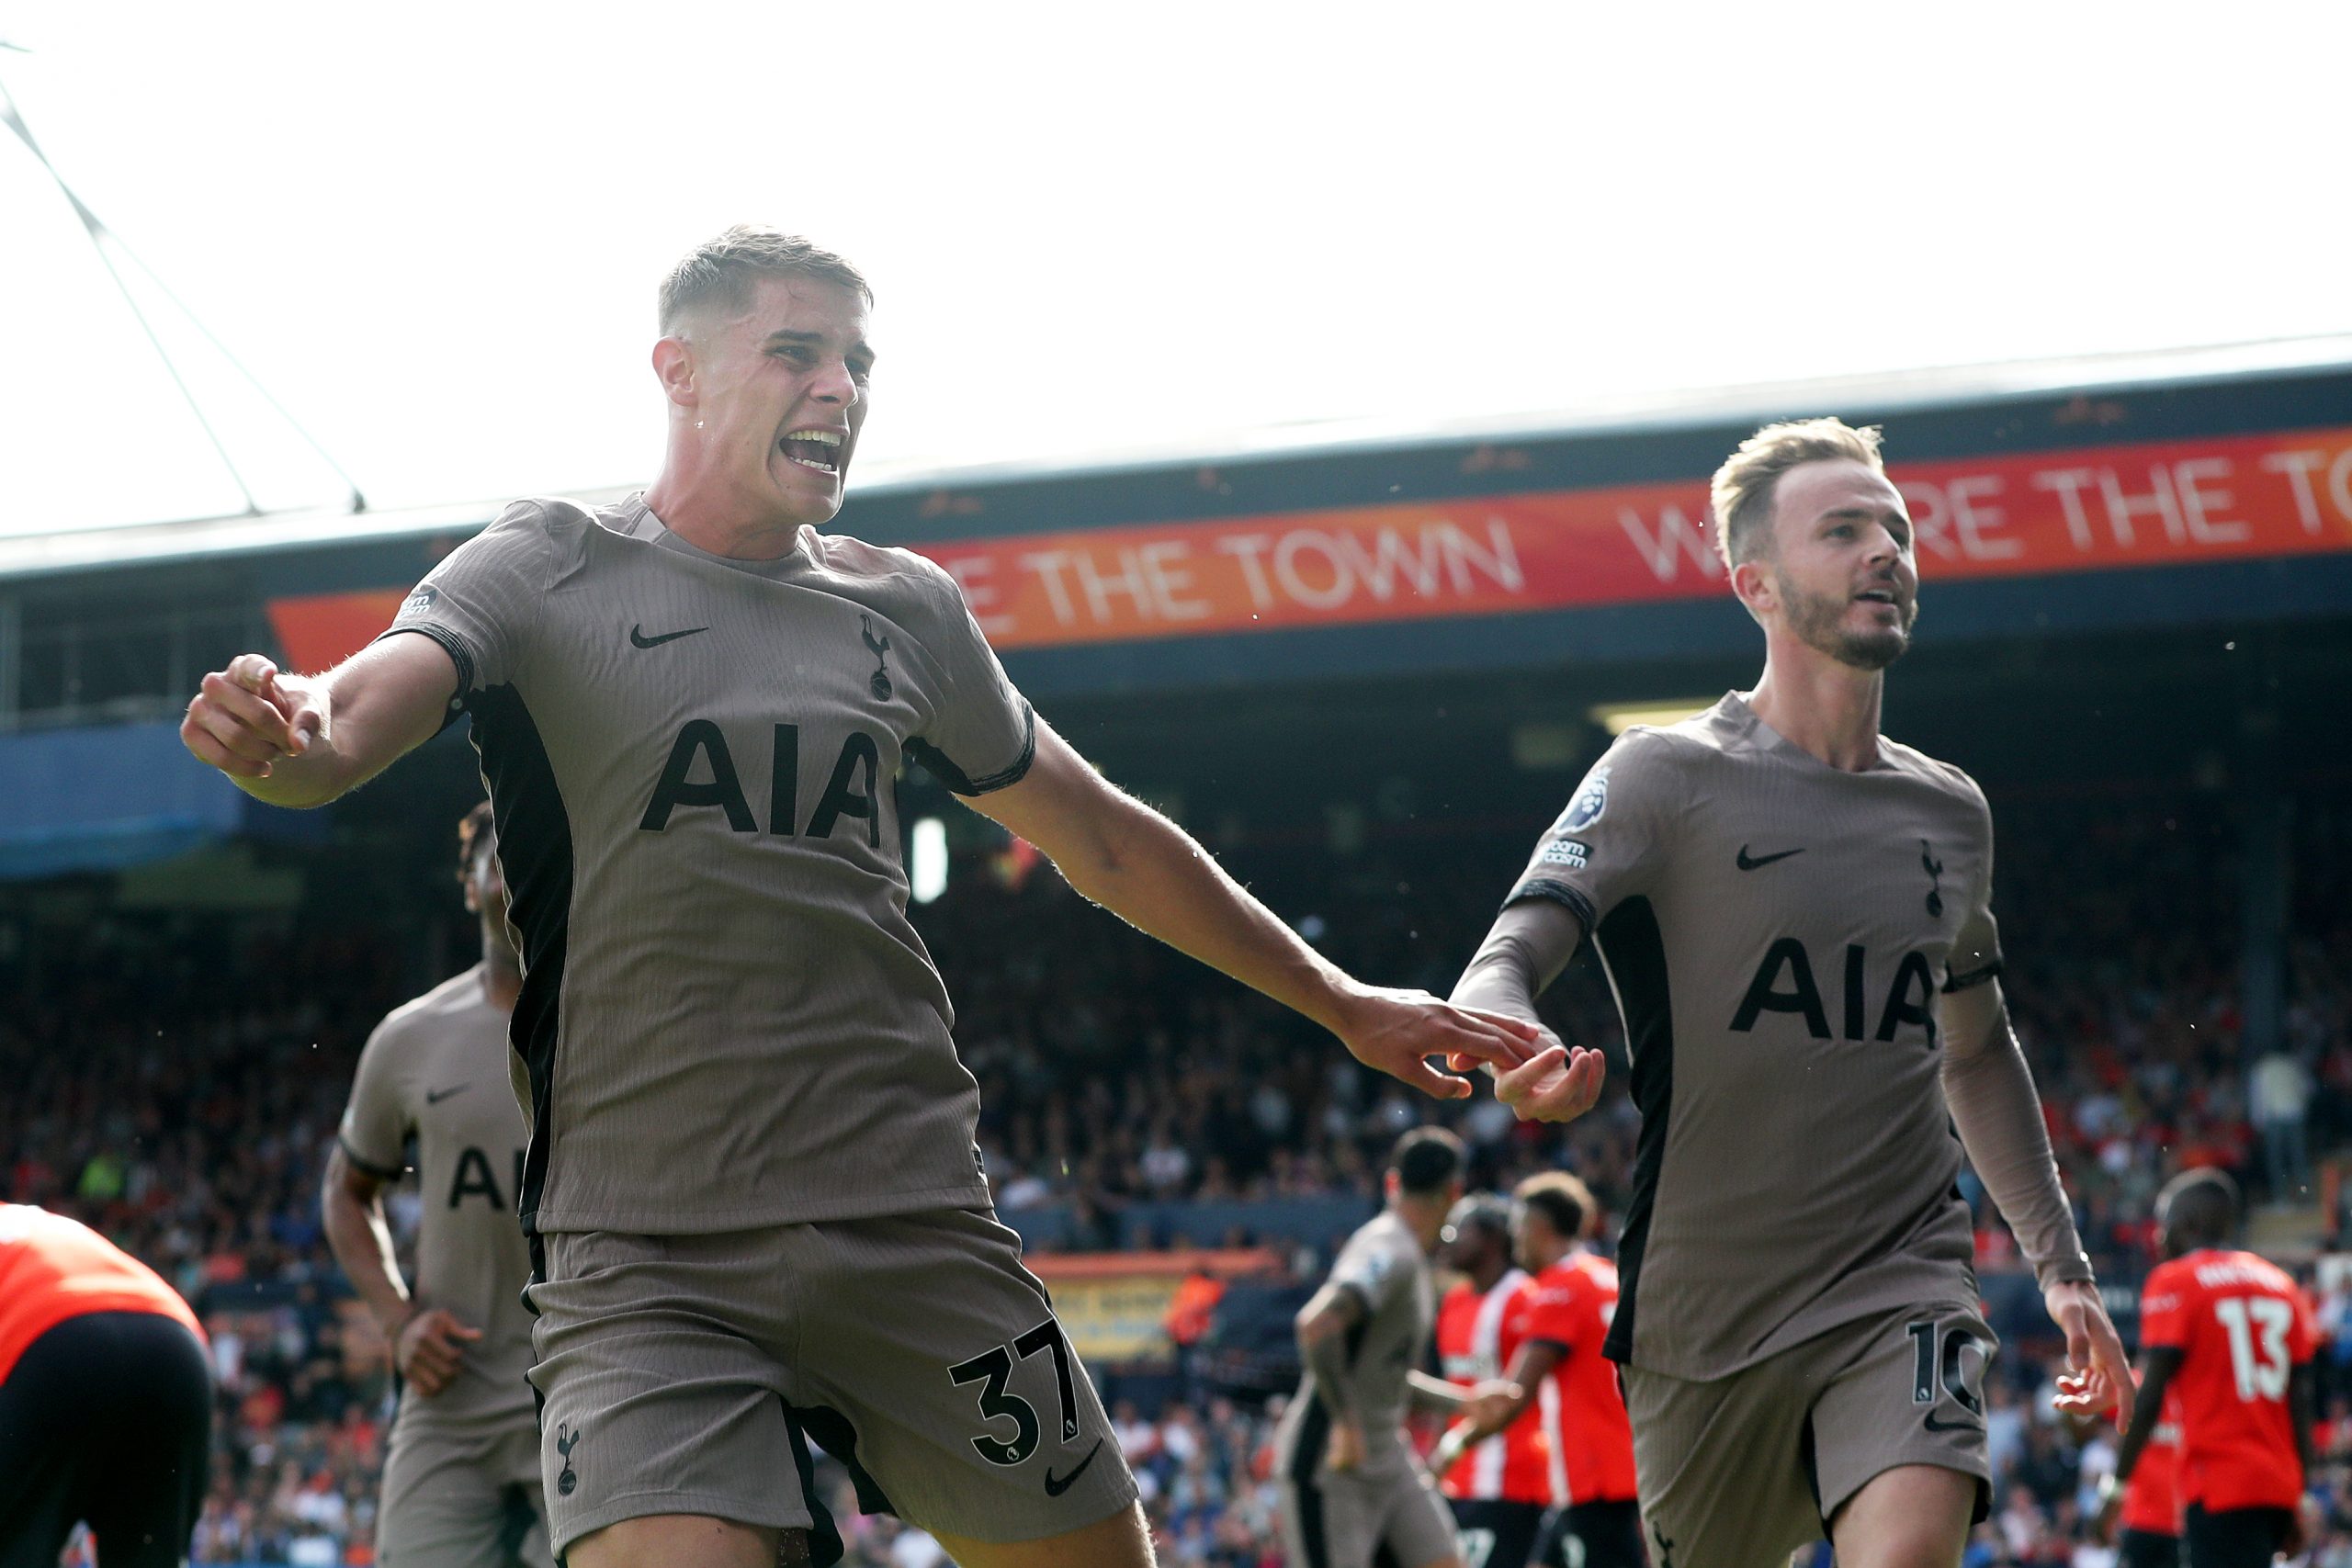 Micky van de Ven driving Tottenham's pursuit of glory